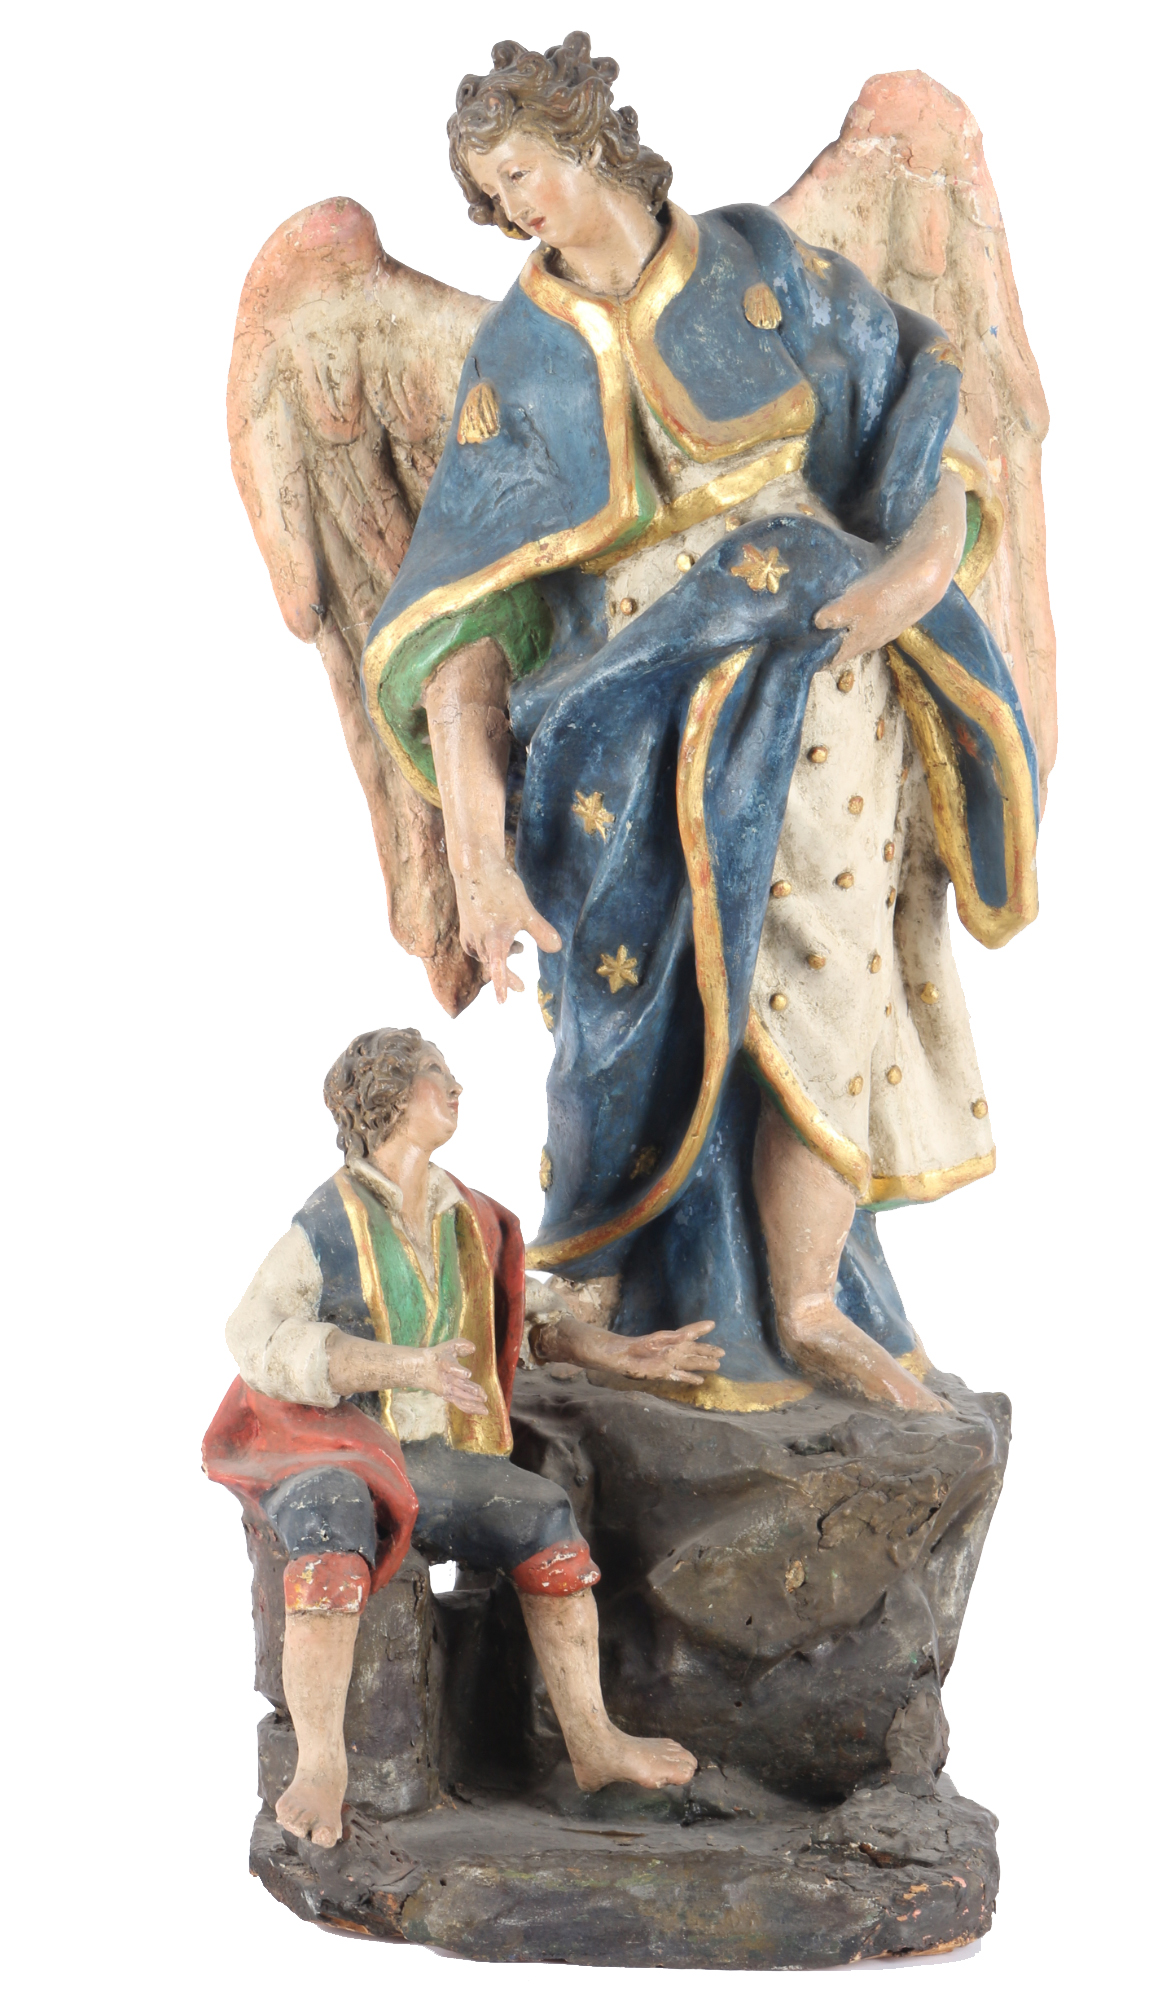 Archangel Raphael and Tobias 18/19th century, große Erzengel Raphael und Tobias Skulptur 18./19. J